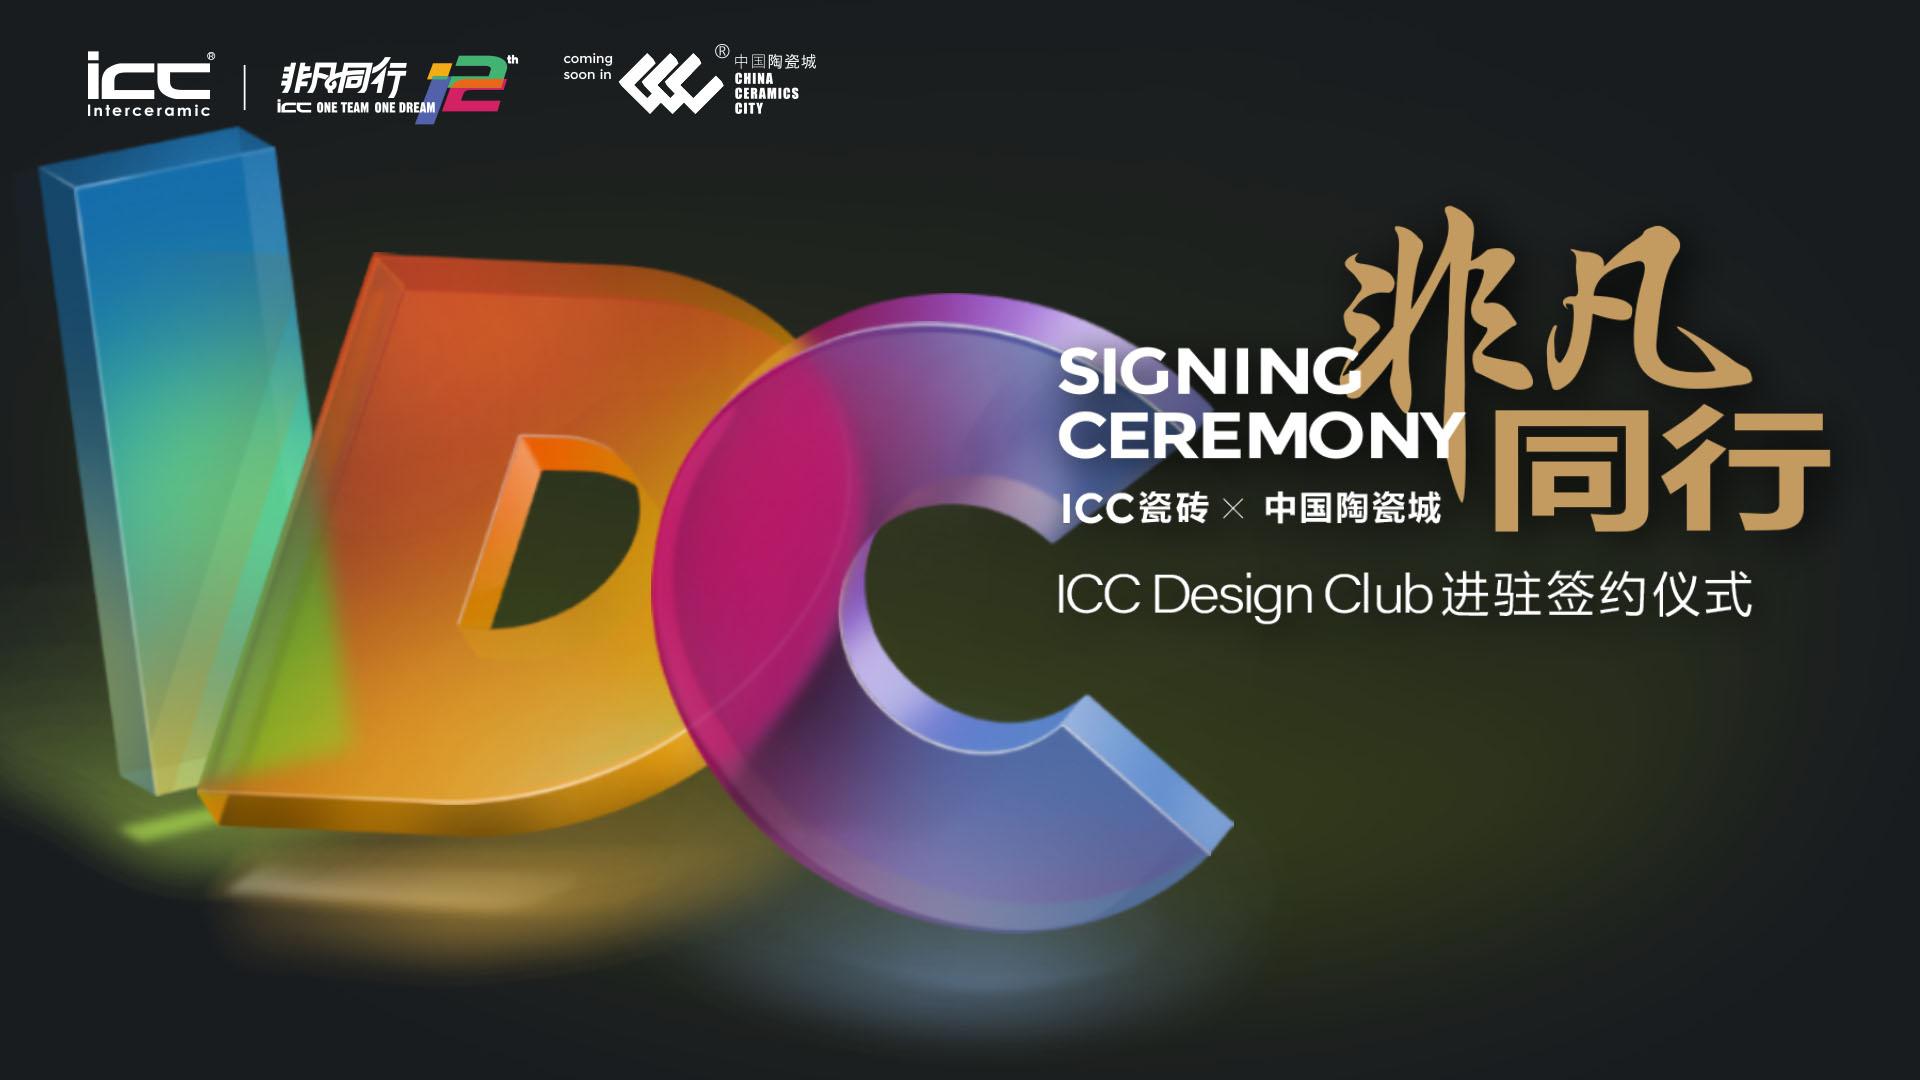 【邀请函】ICC Design Club进驻中国陶瓷城签约仪式，邀您见证！